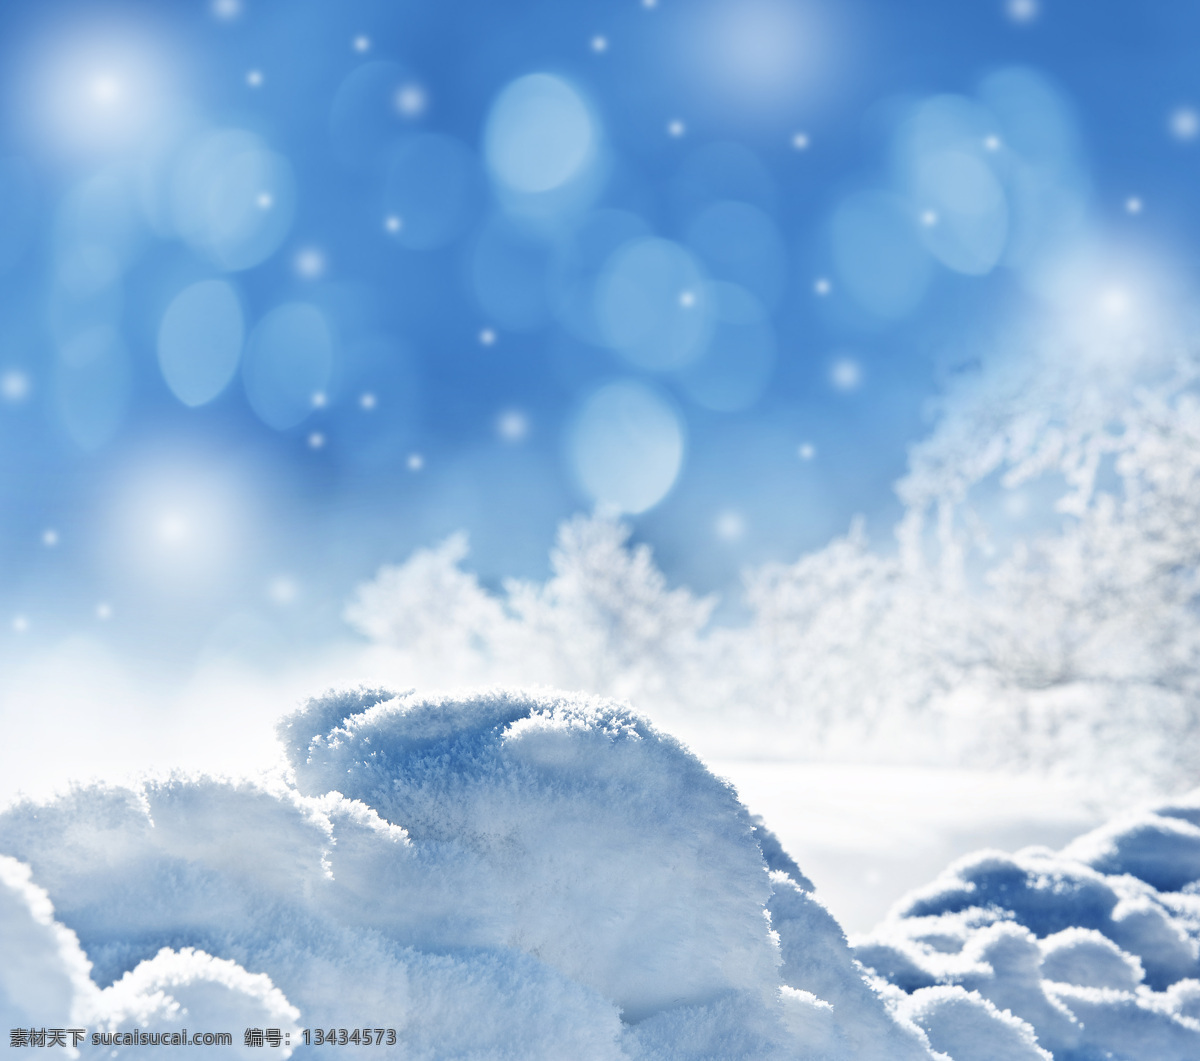 雪地风景 蓝色 梦幻 唯美雪景 雪景 冬季 冬天